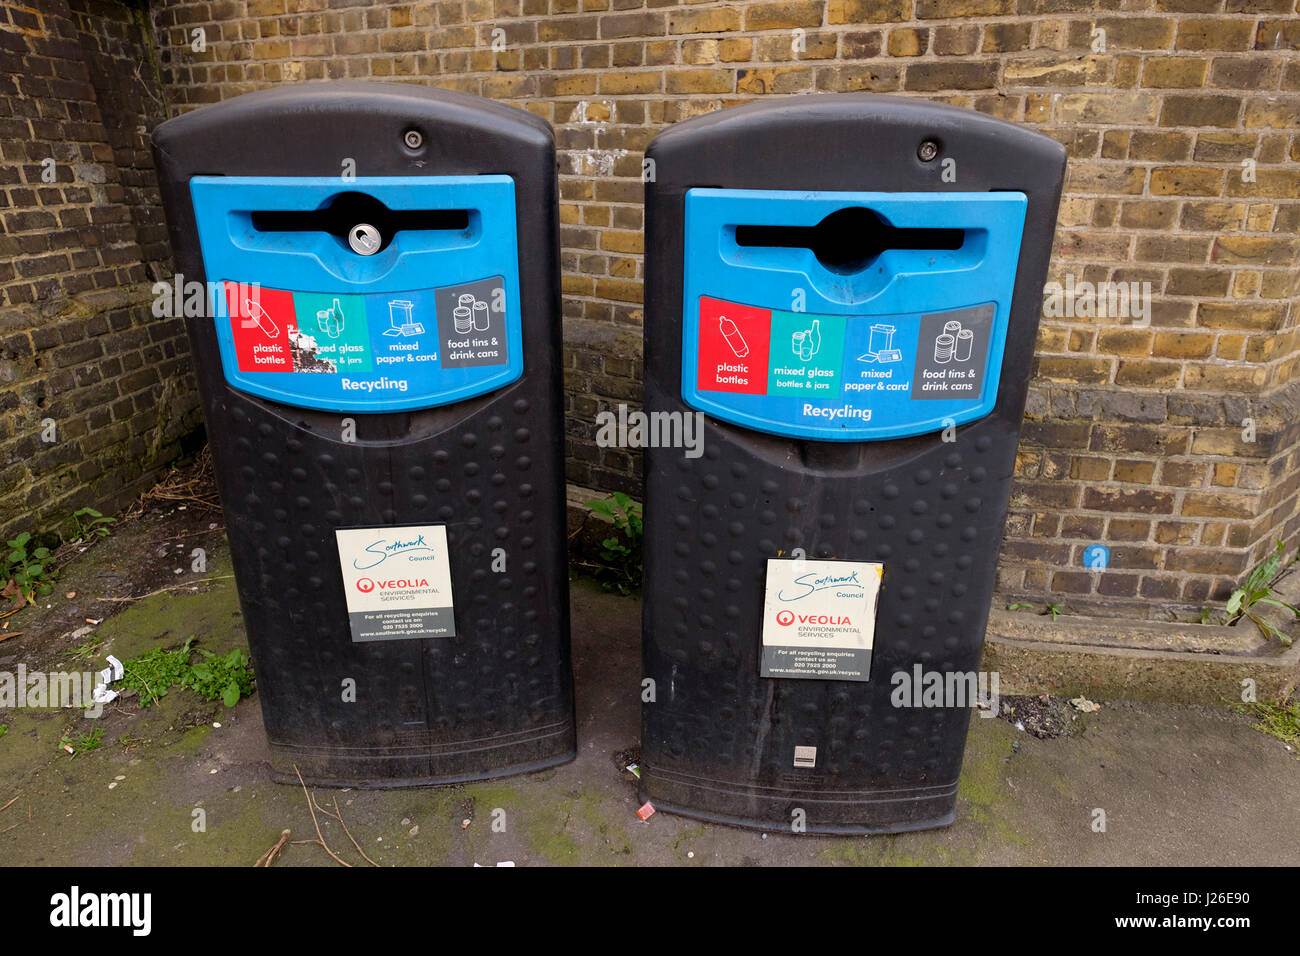 Veolia recycle bins, London, England, UK Stock Photo